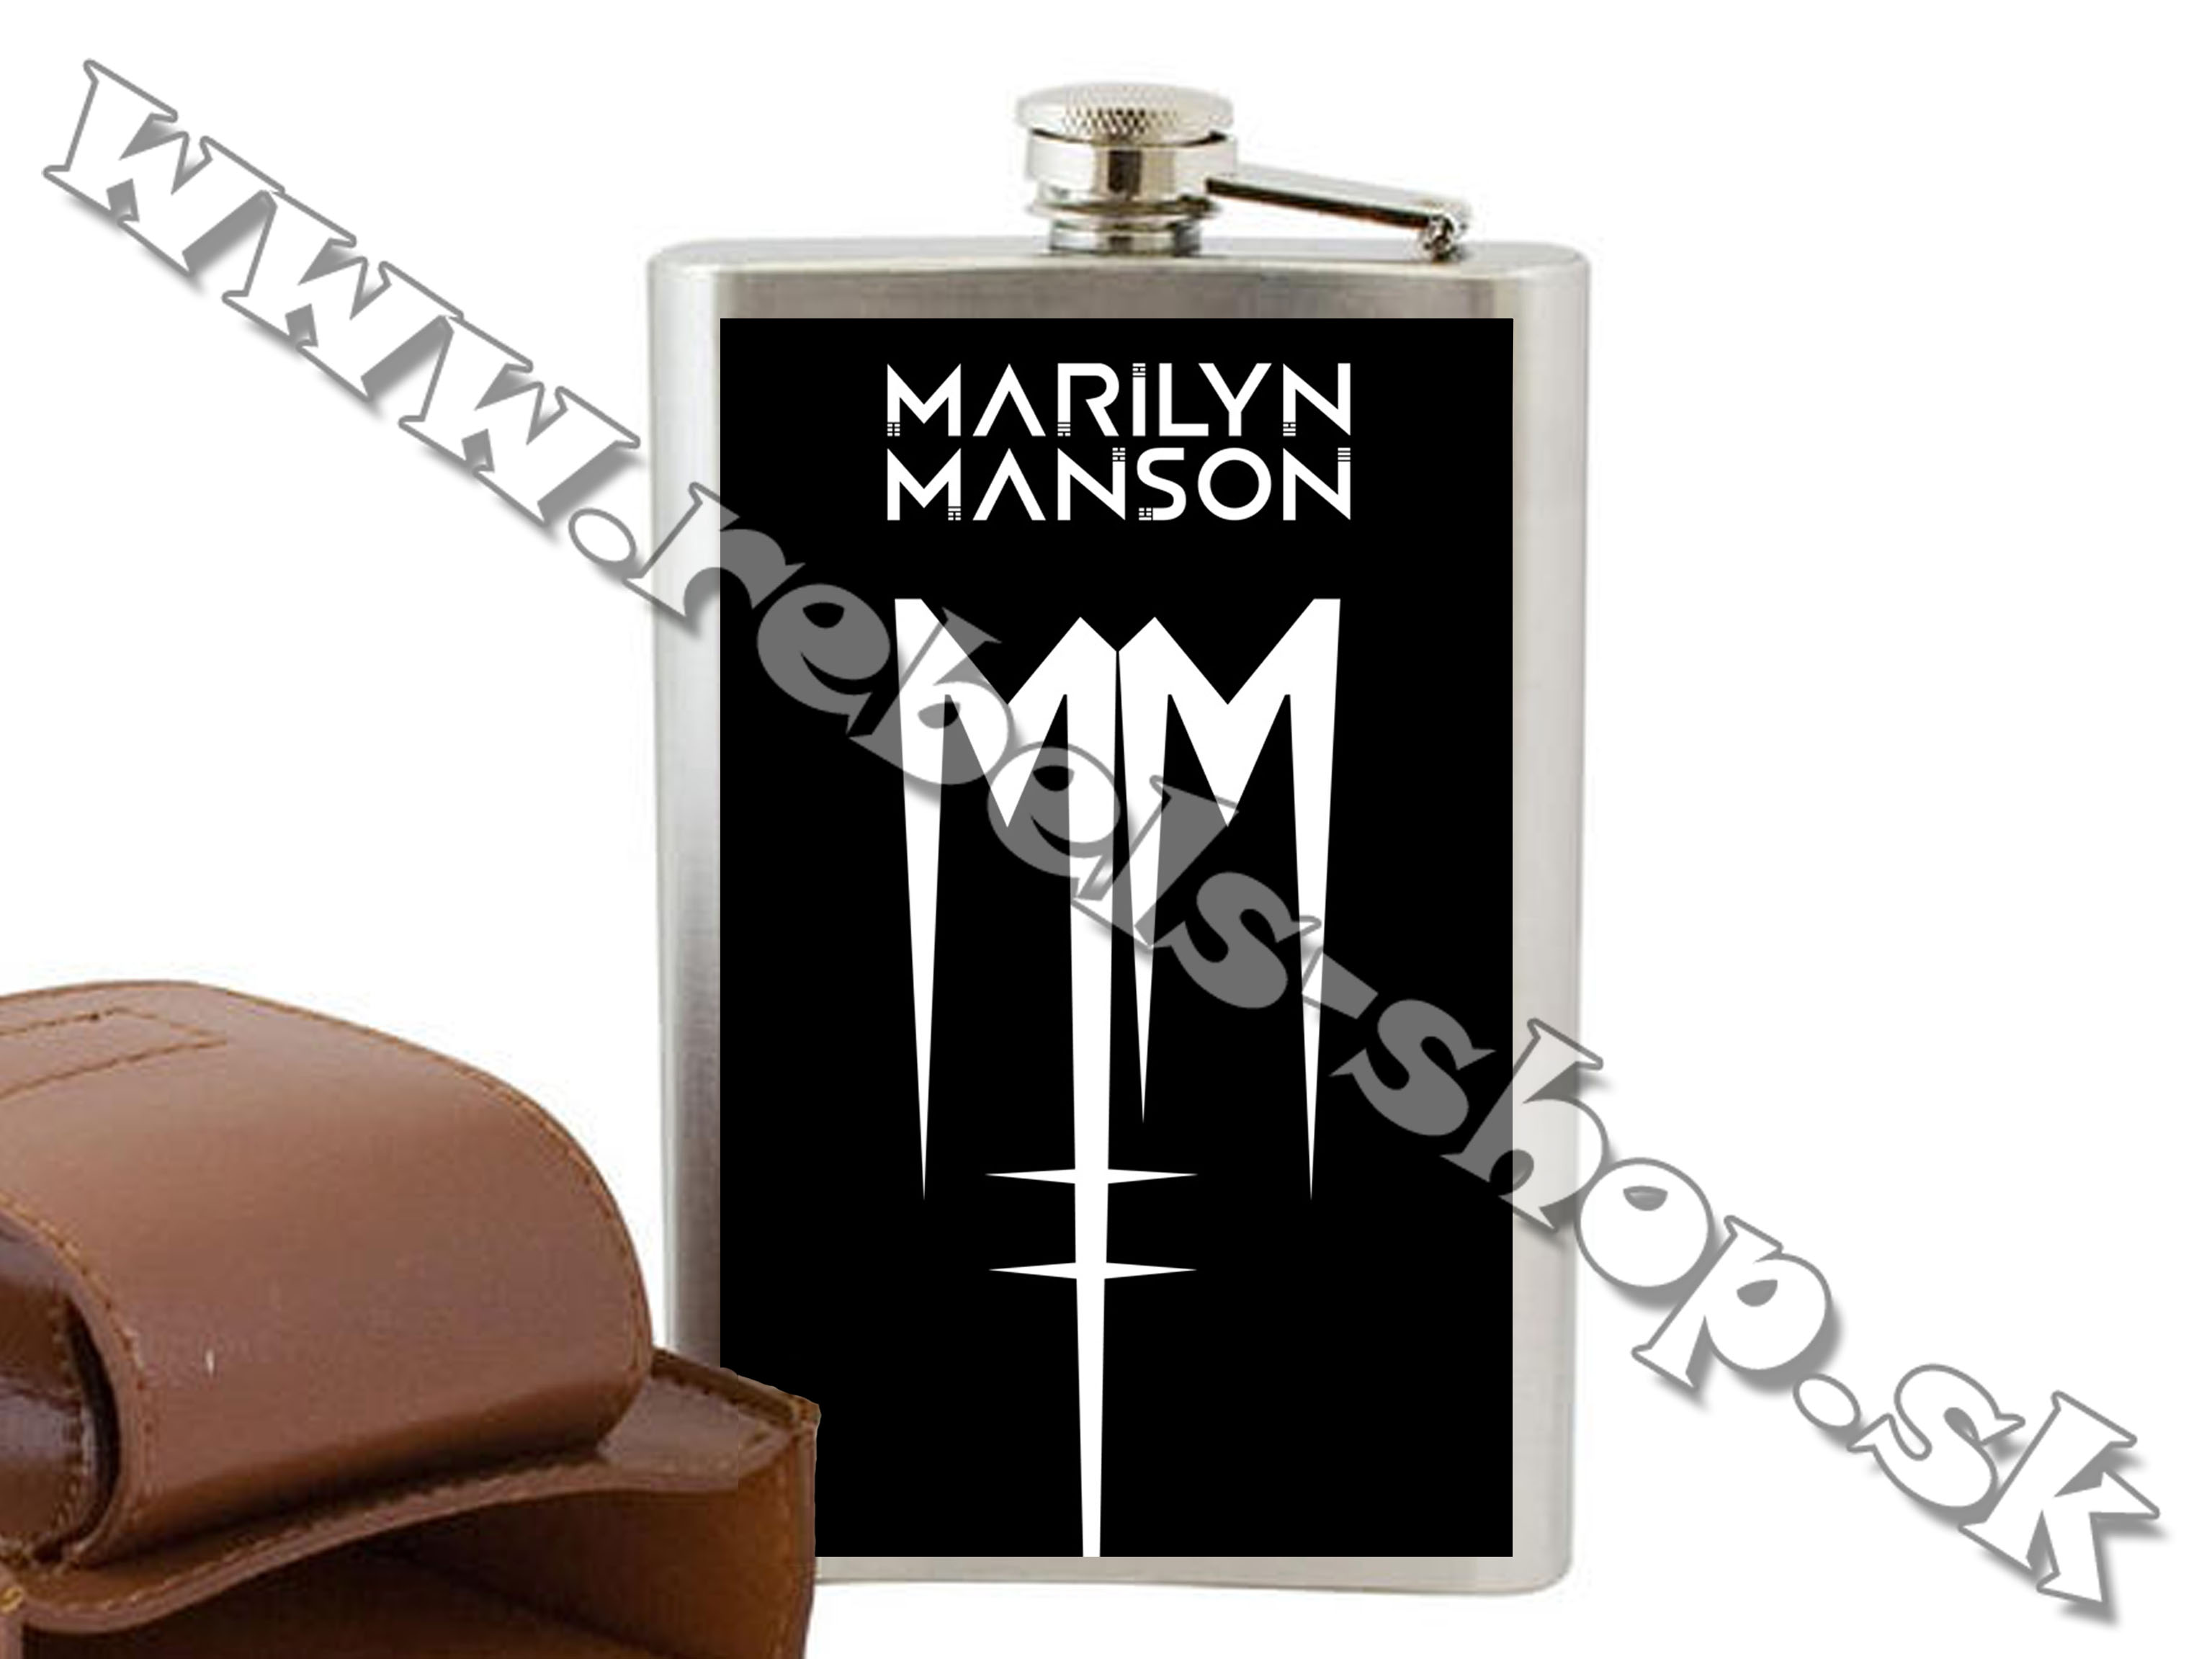 Ploskačka "Marilyn Manson"